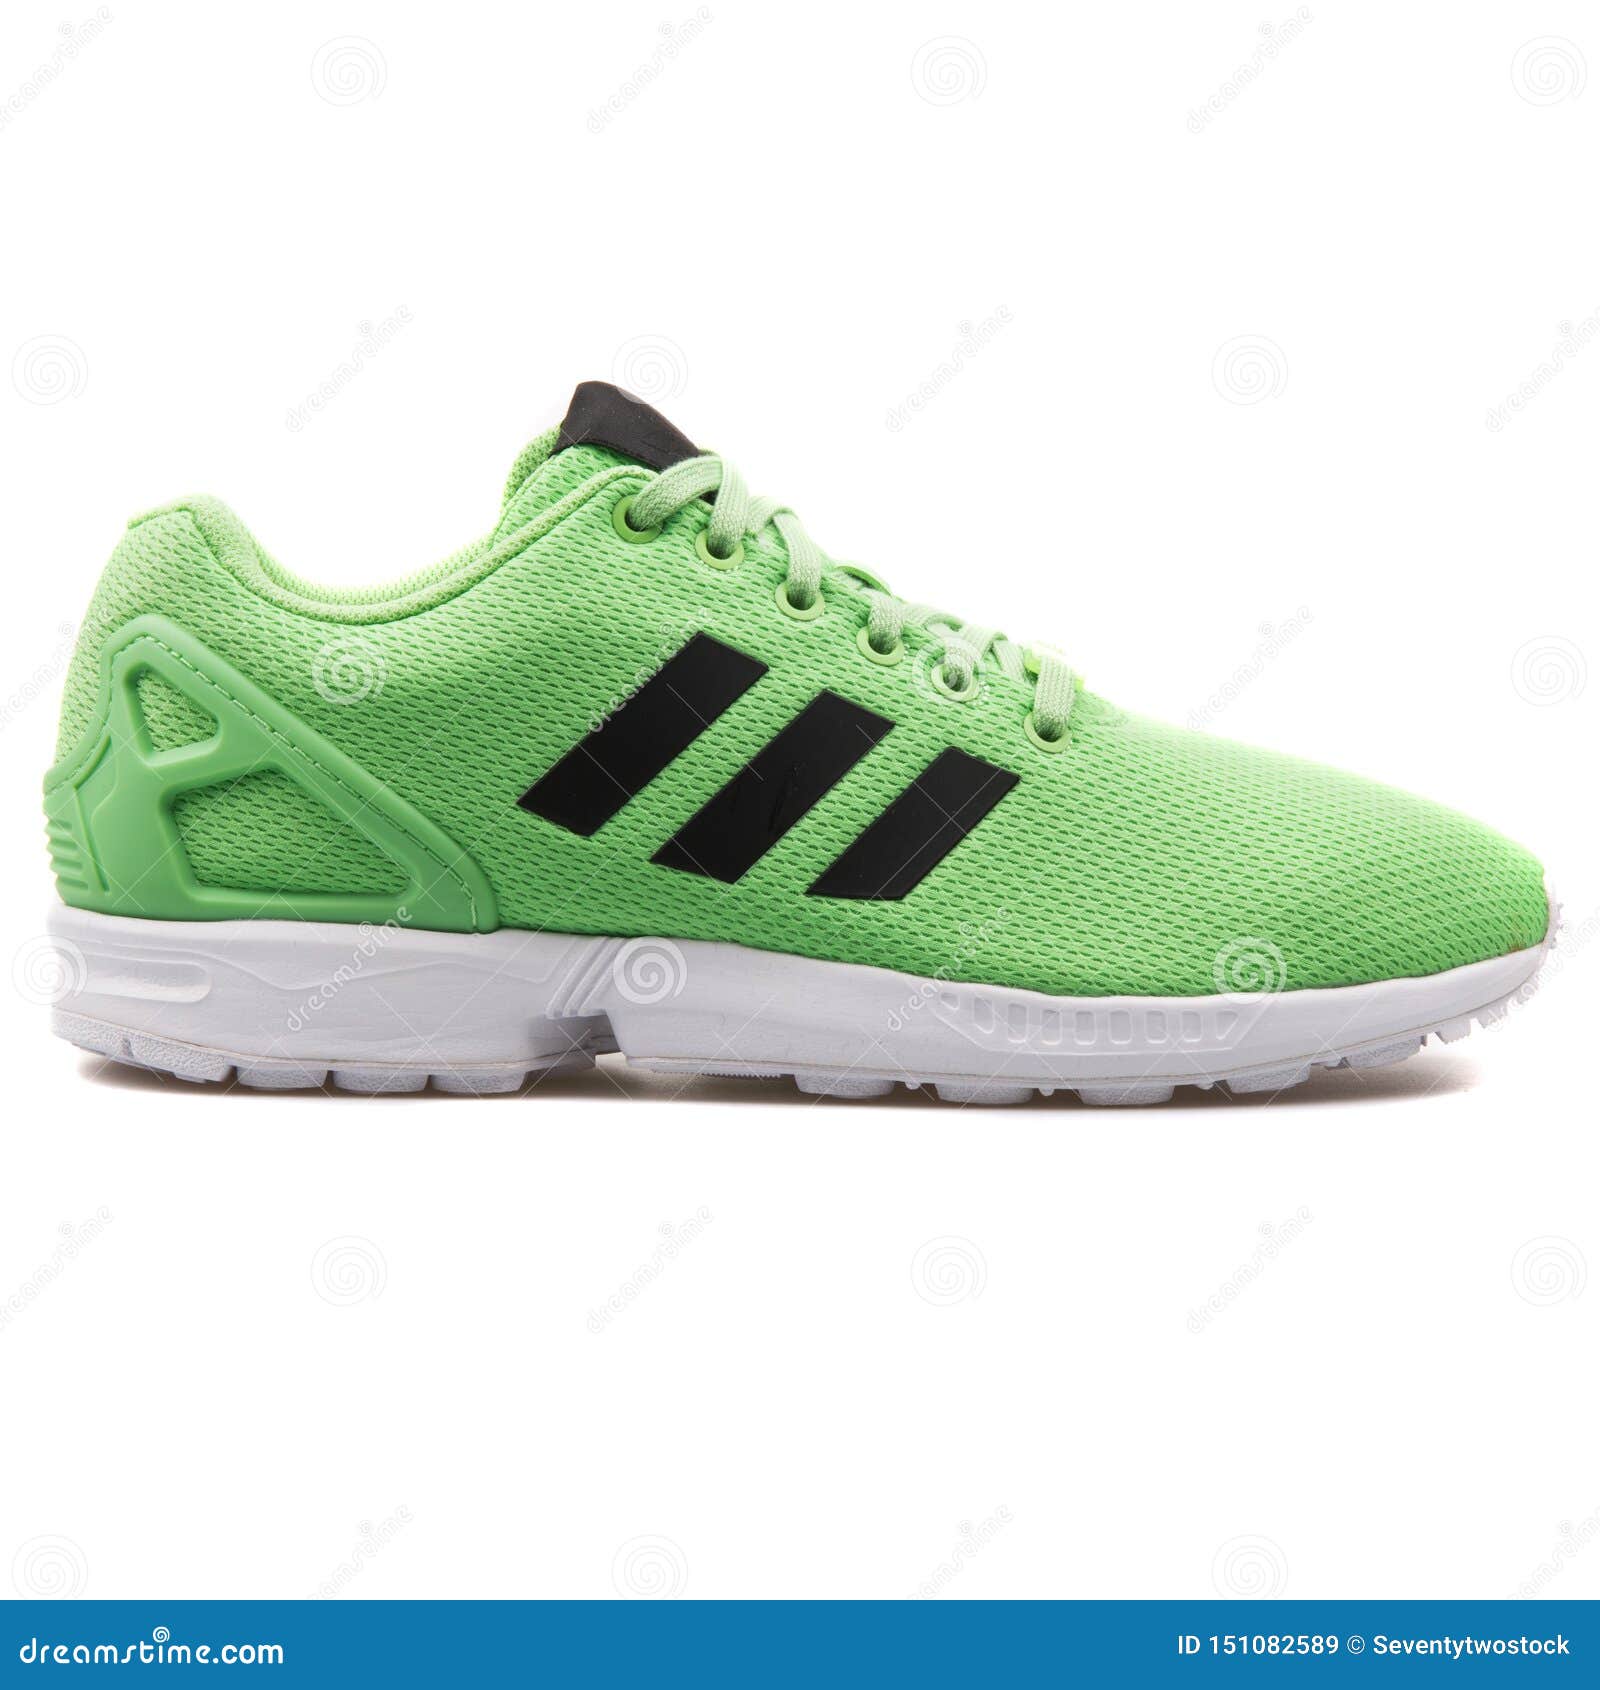 adidas zx flux green